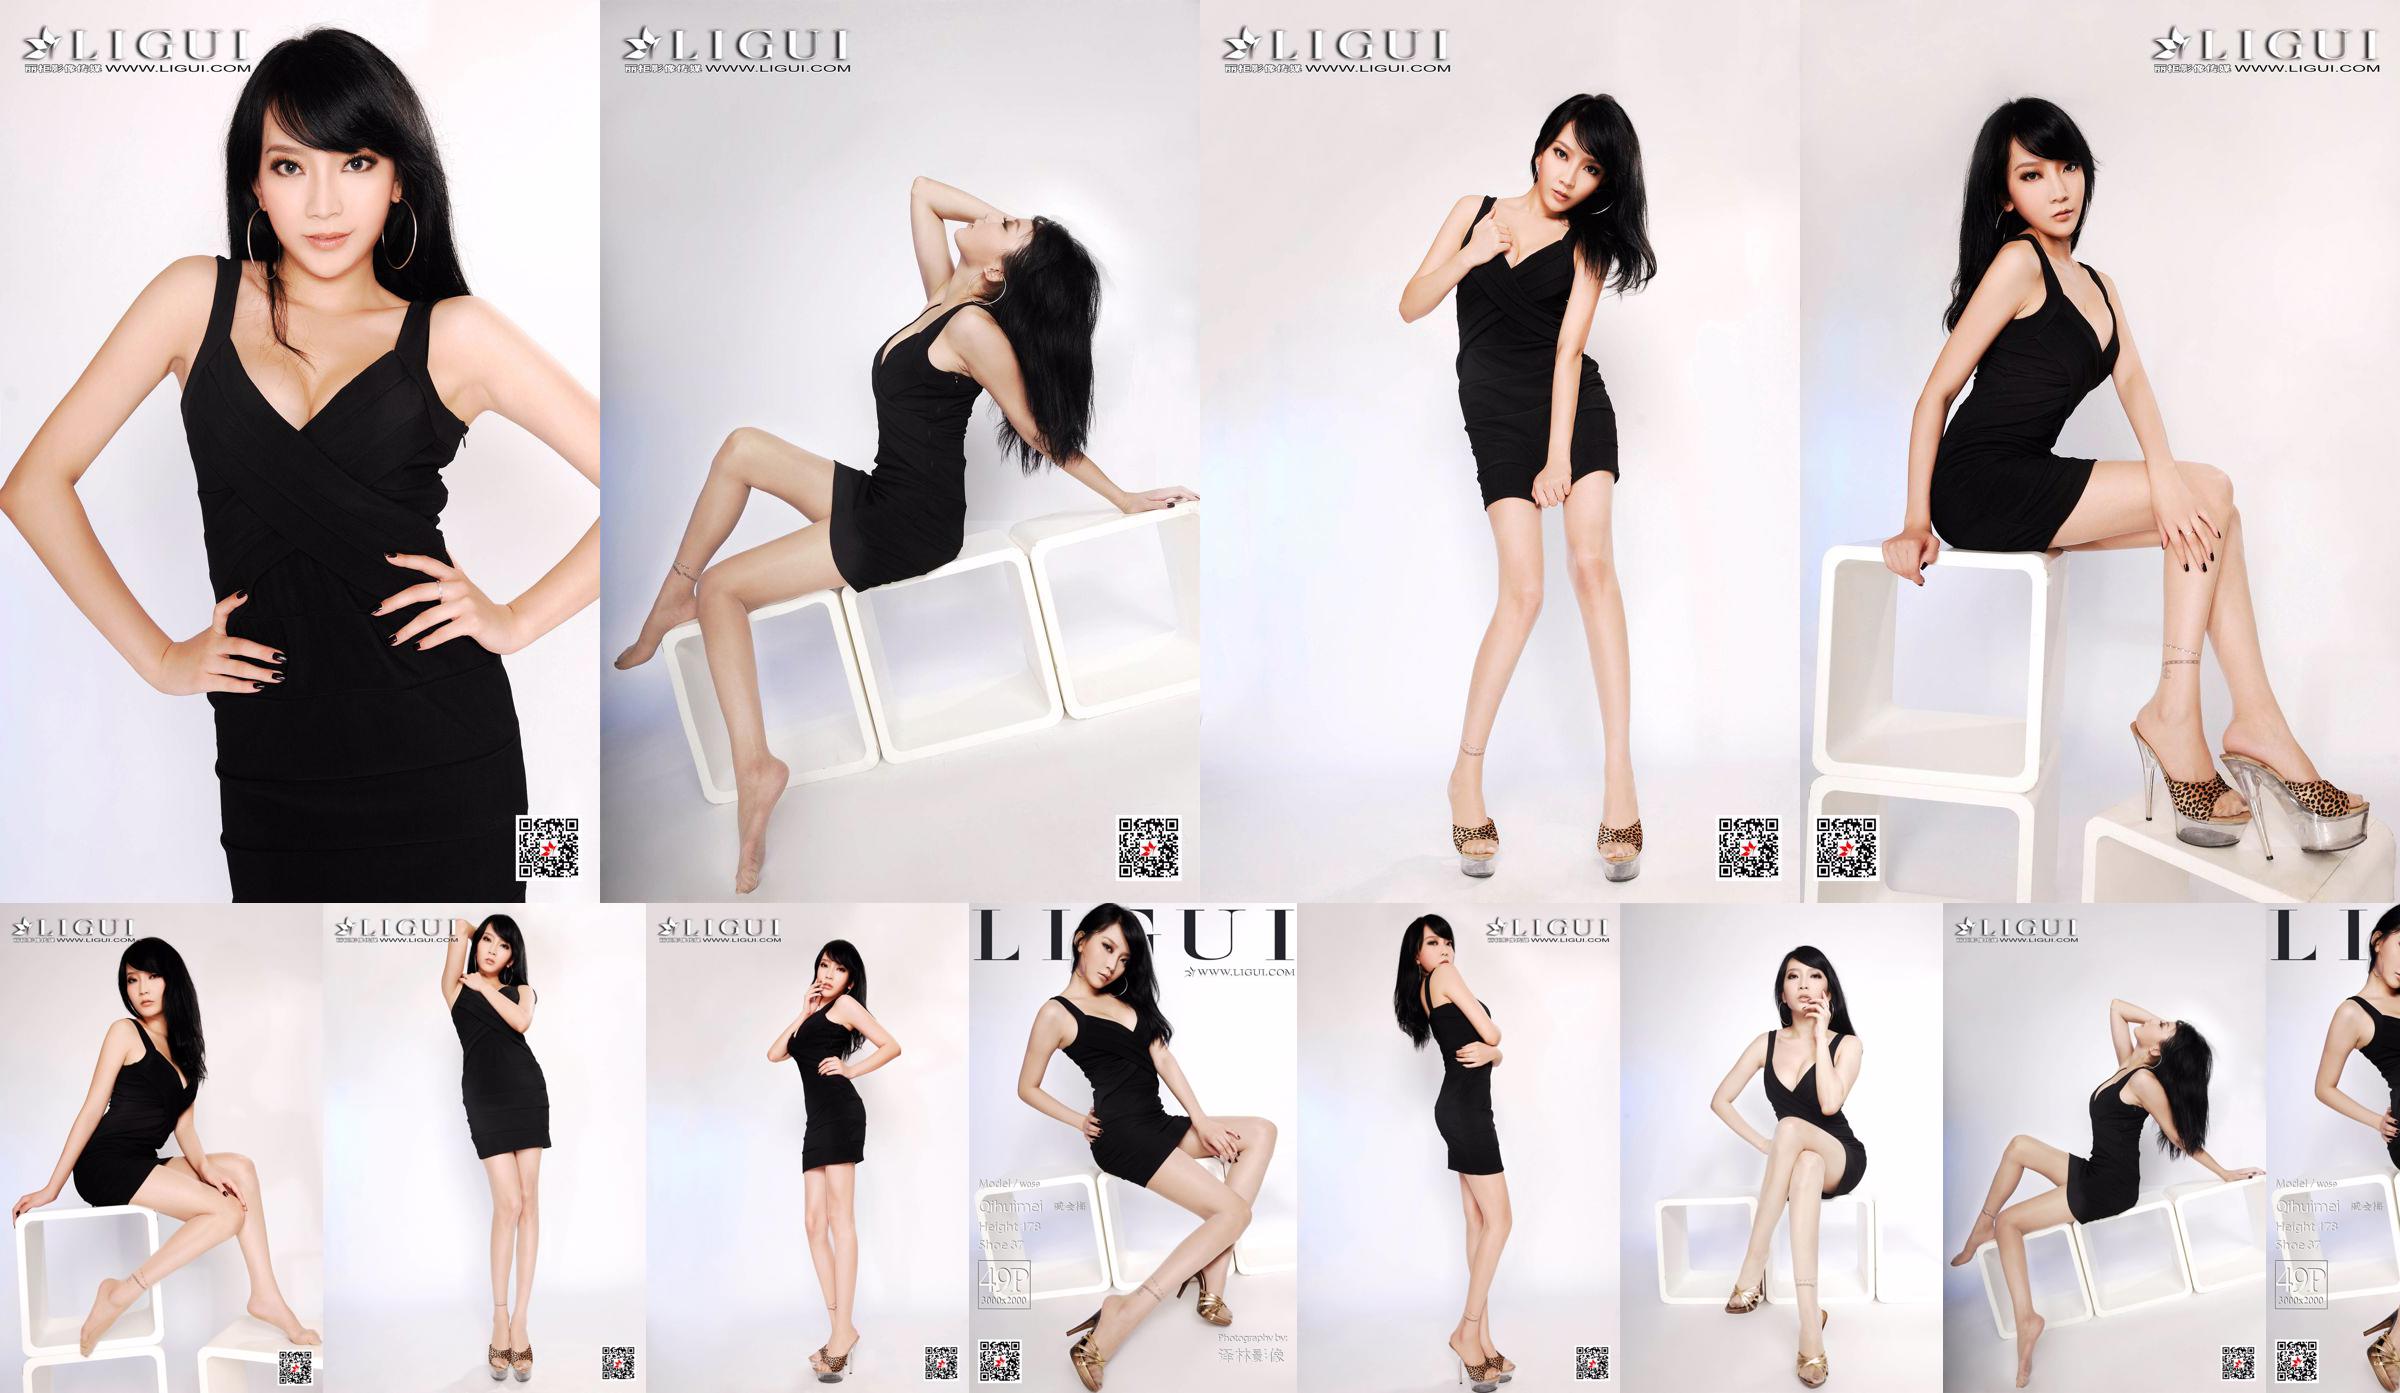 Người mẫu Qi Huimei "Chụp chân heo trong studio" [丽 柜 Ligui] No.86b9c6 Trang 1